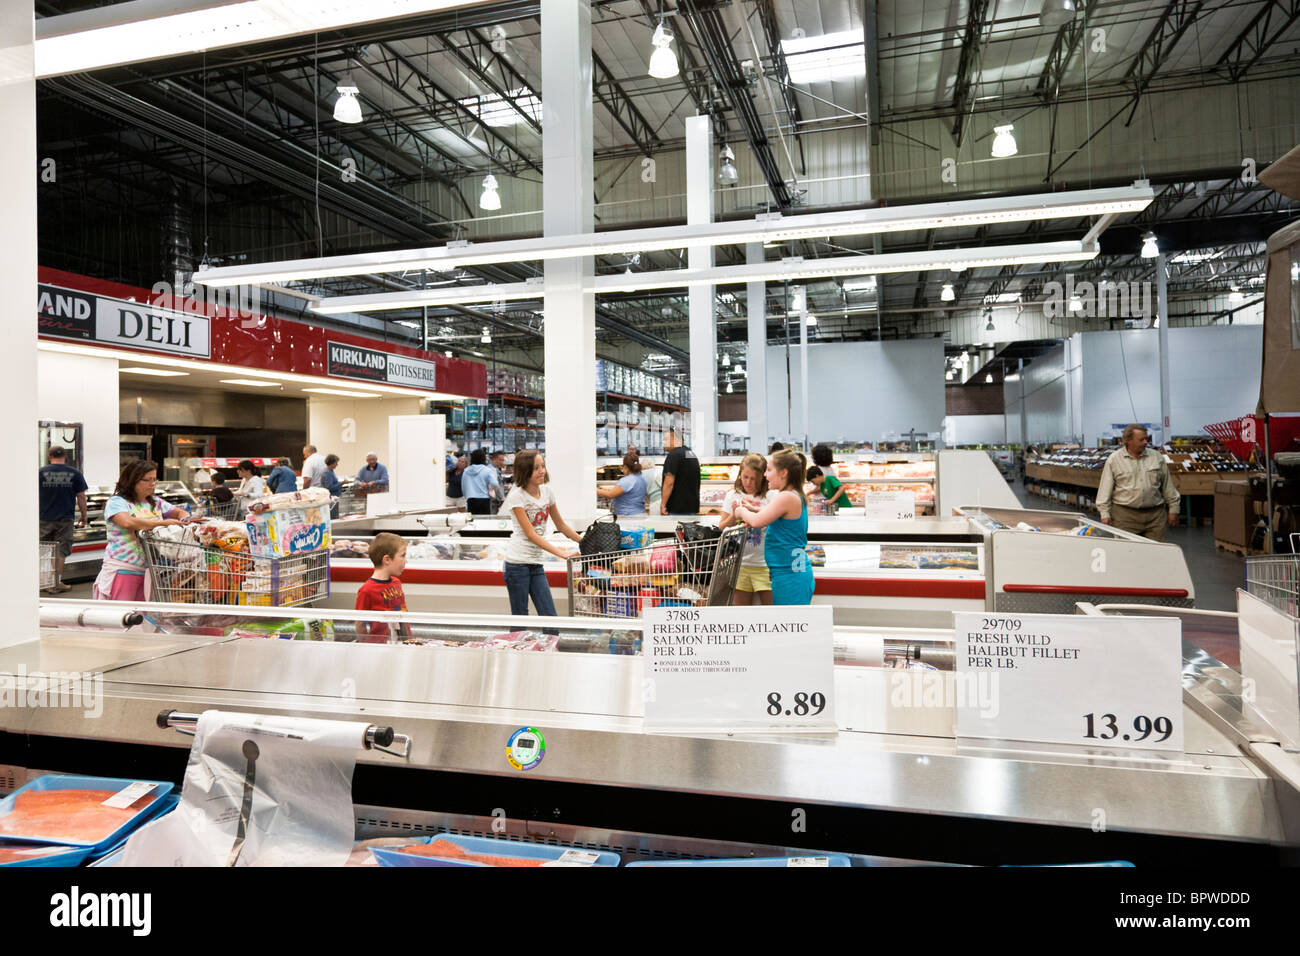 Allées de shoppers errer alimentation section de Costco USA avec de grands paniers remplis de nourriture et de biens durables vendus en vrac Banque D'Images